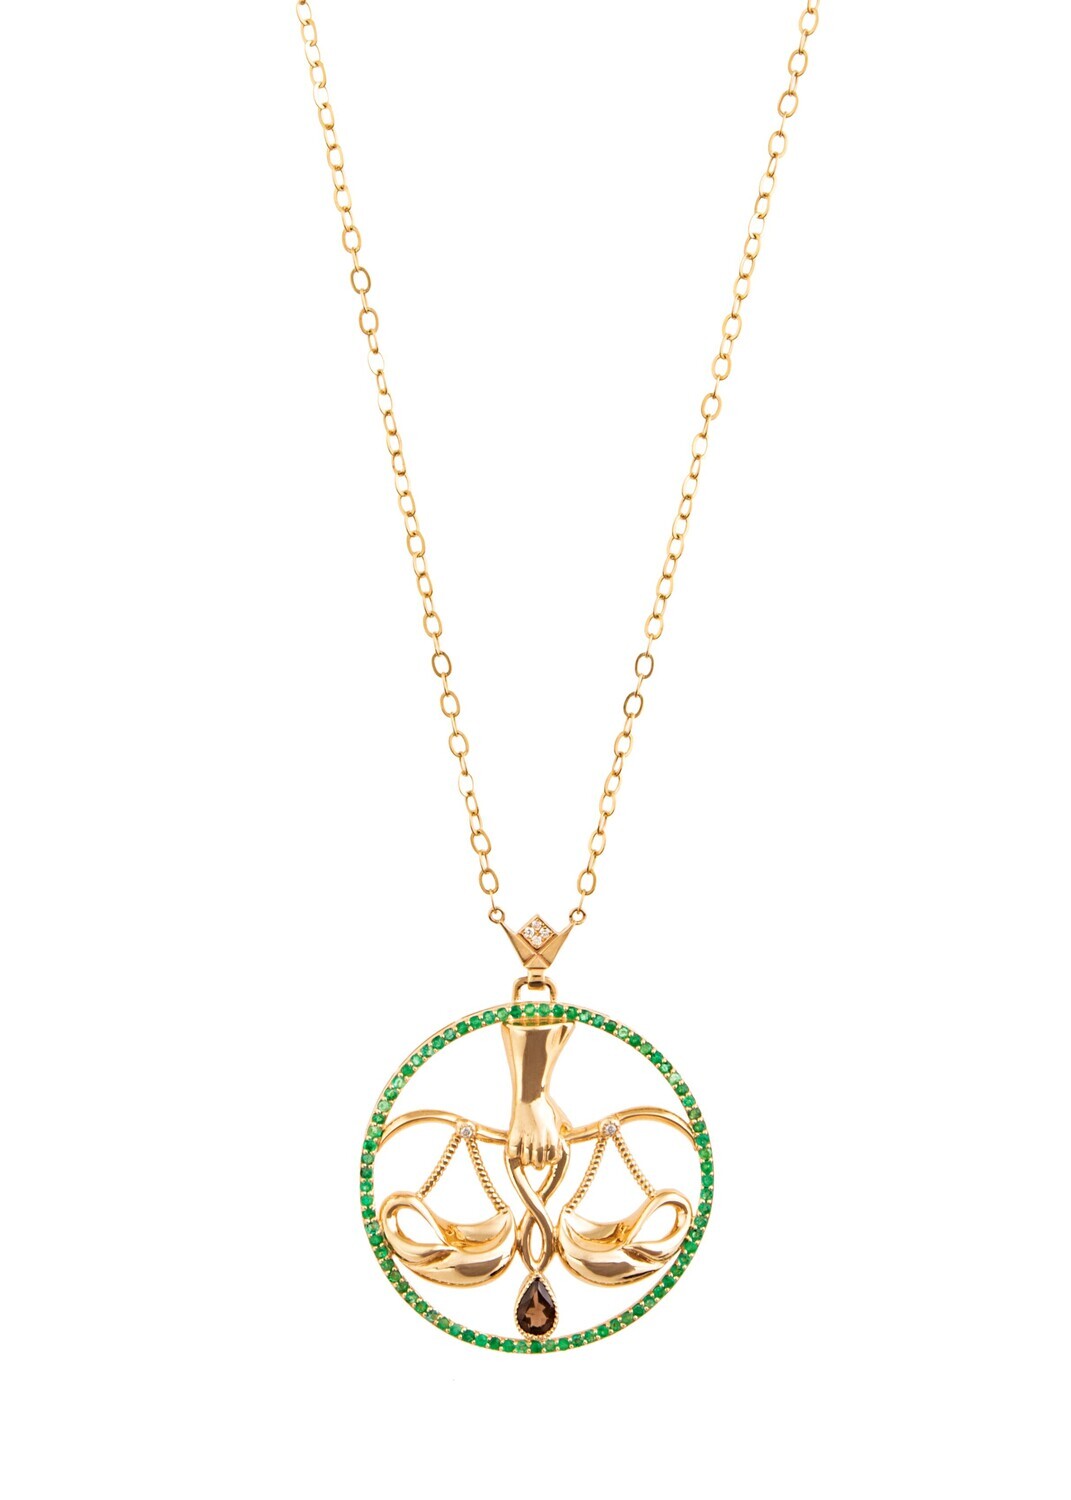 Zodiac Diamond Necklace Libra with Emerald and Precious Stone